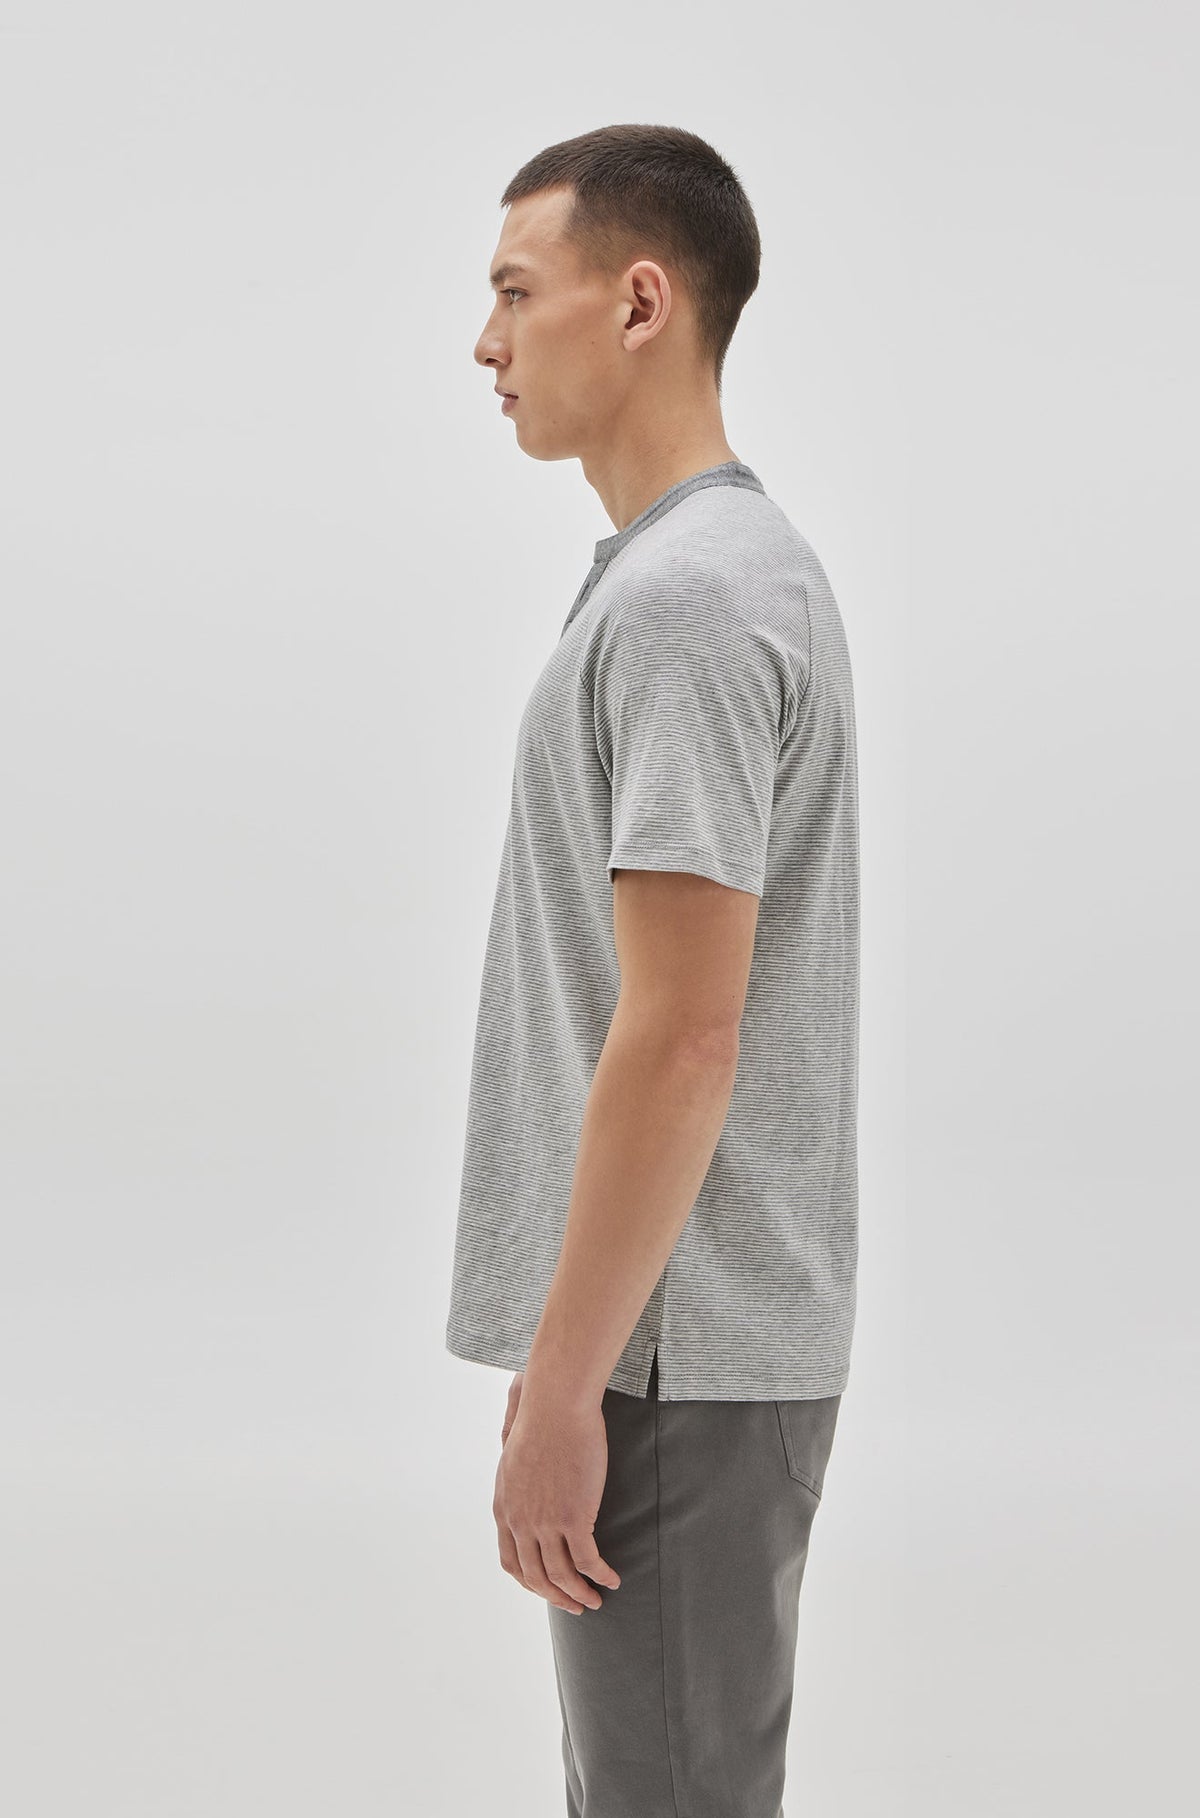 T-Shirt henley pour homme par Robert Barakett | RB21050/Cecil Gris Clair/Light Grey| Boutique Vvög, vêtements mode pour homme et femme